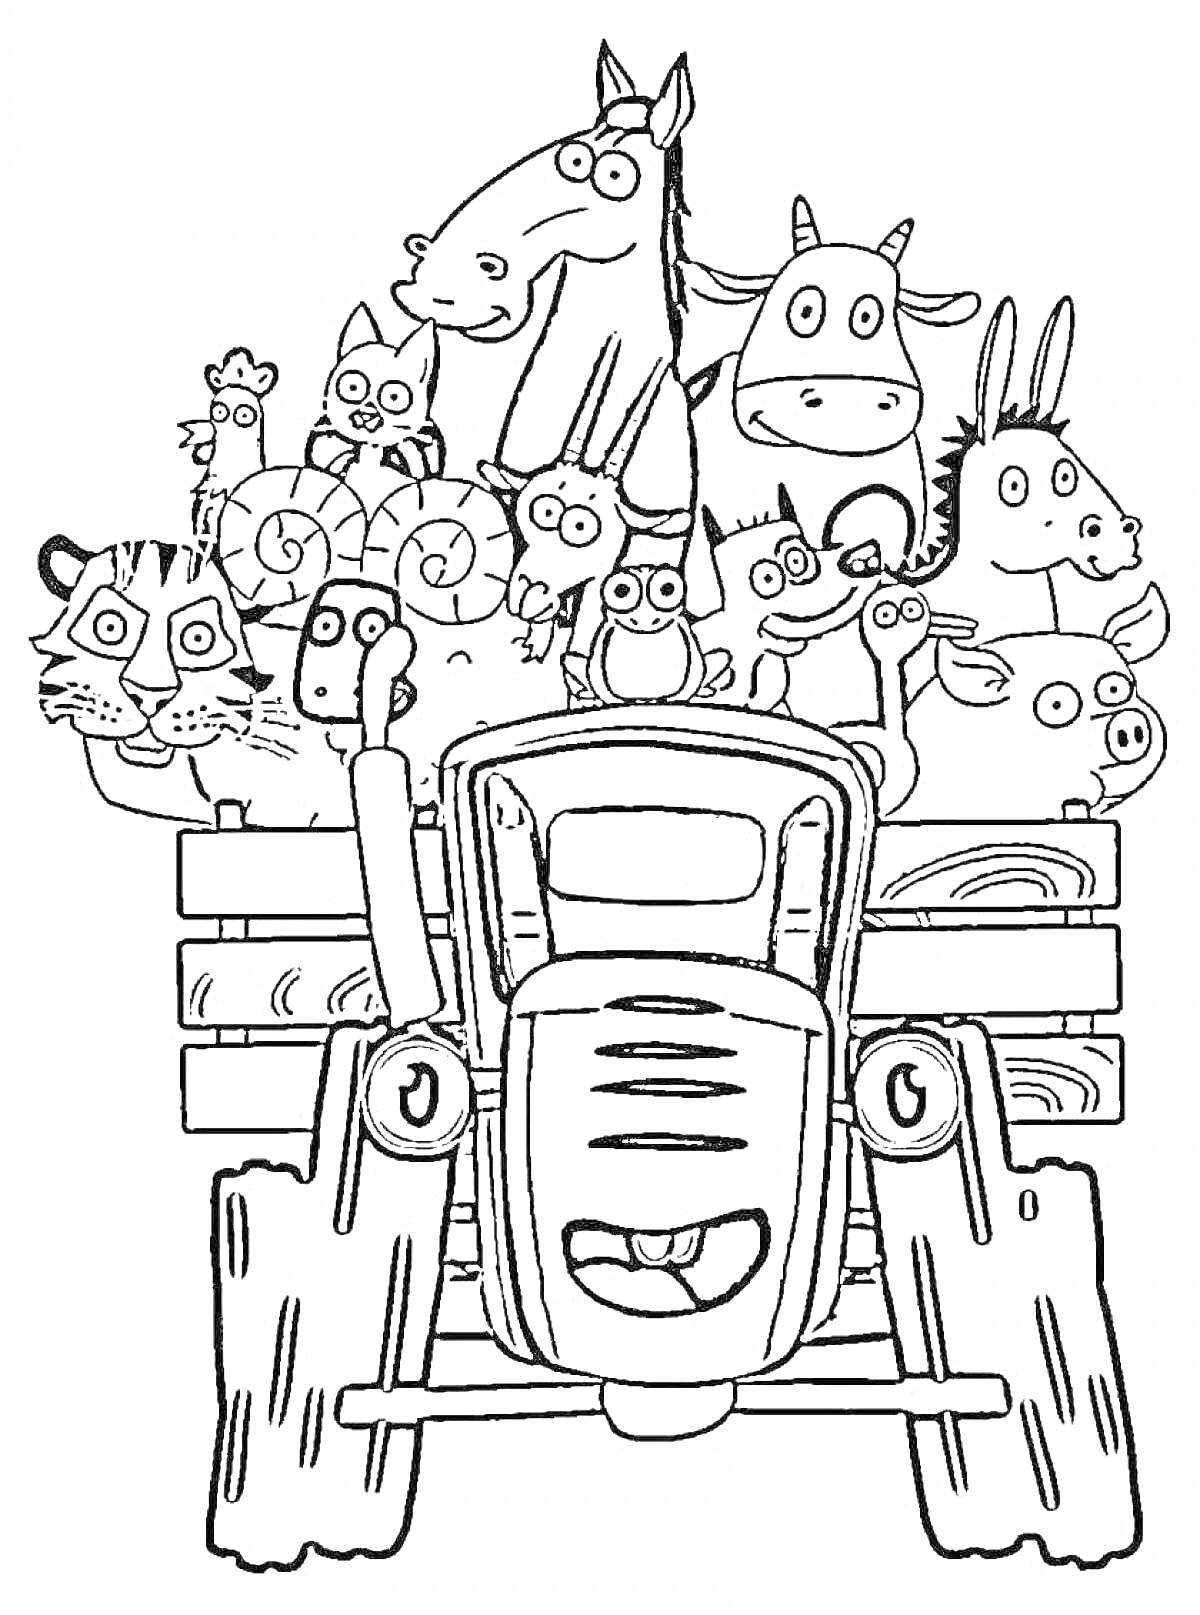 Раскраска Трактор с различными животными (корову, лошадь, осла, овец, тигра, свинью, козла, куницу и других животных) в кузове